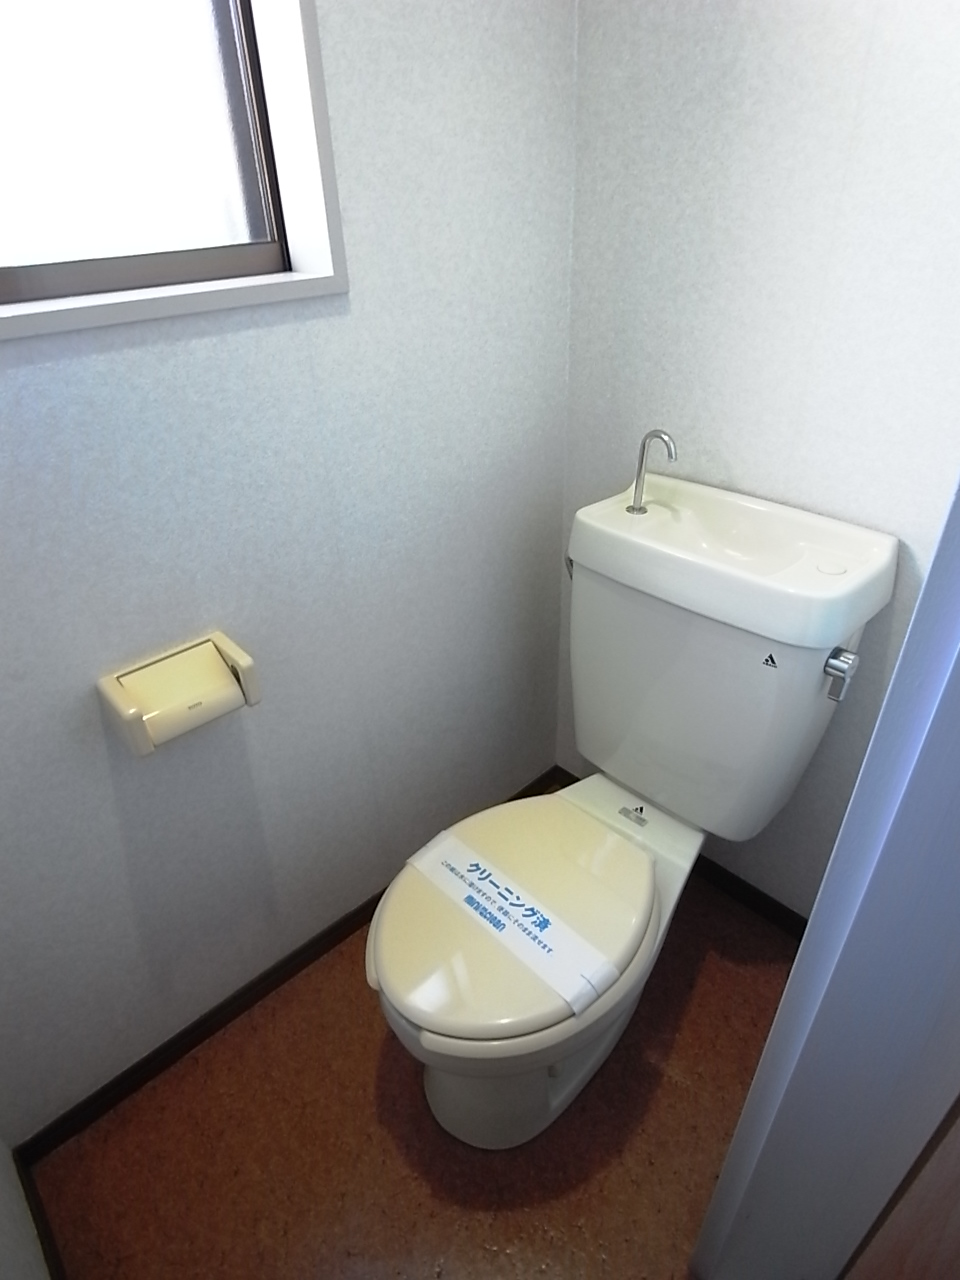 Toilet. ◇ bus toilet by